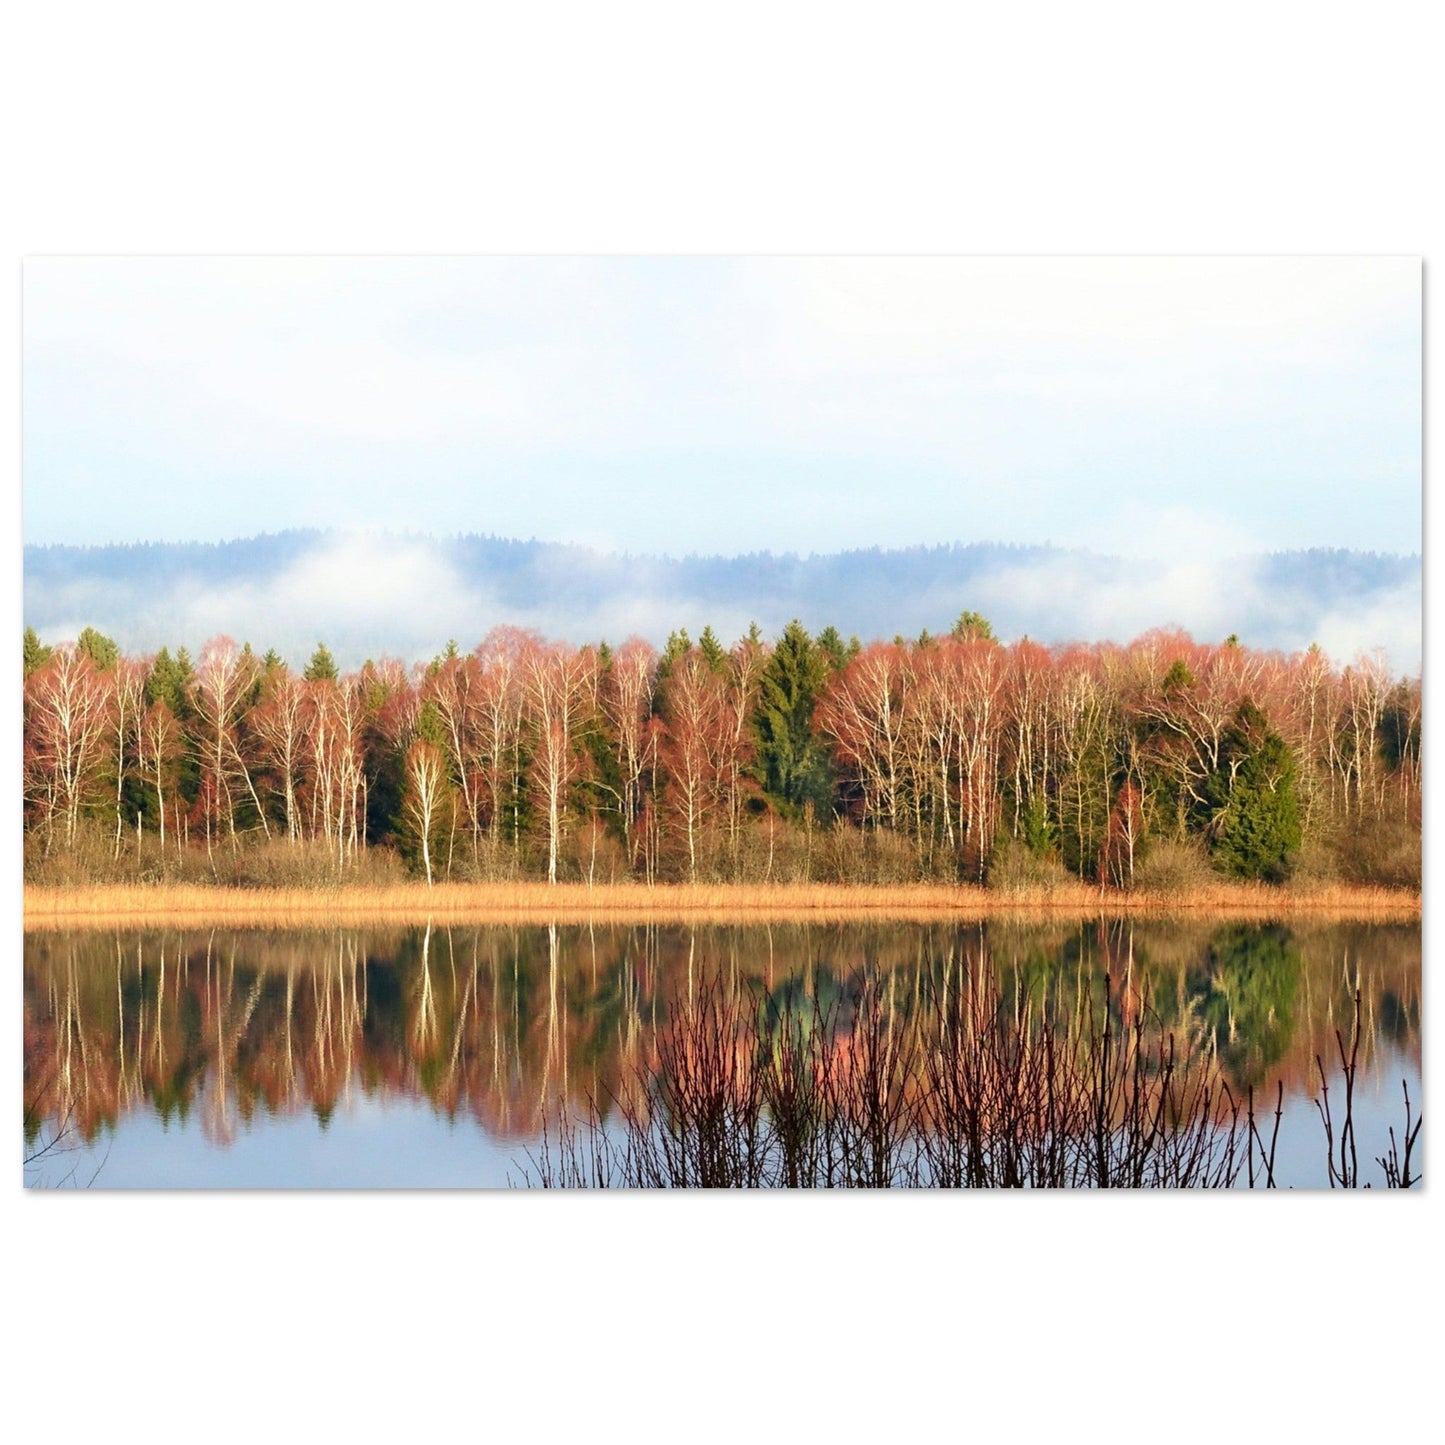 Vente Photo du Jura en automne #3 - Tableau photo alu montagne